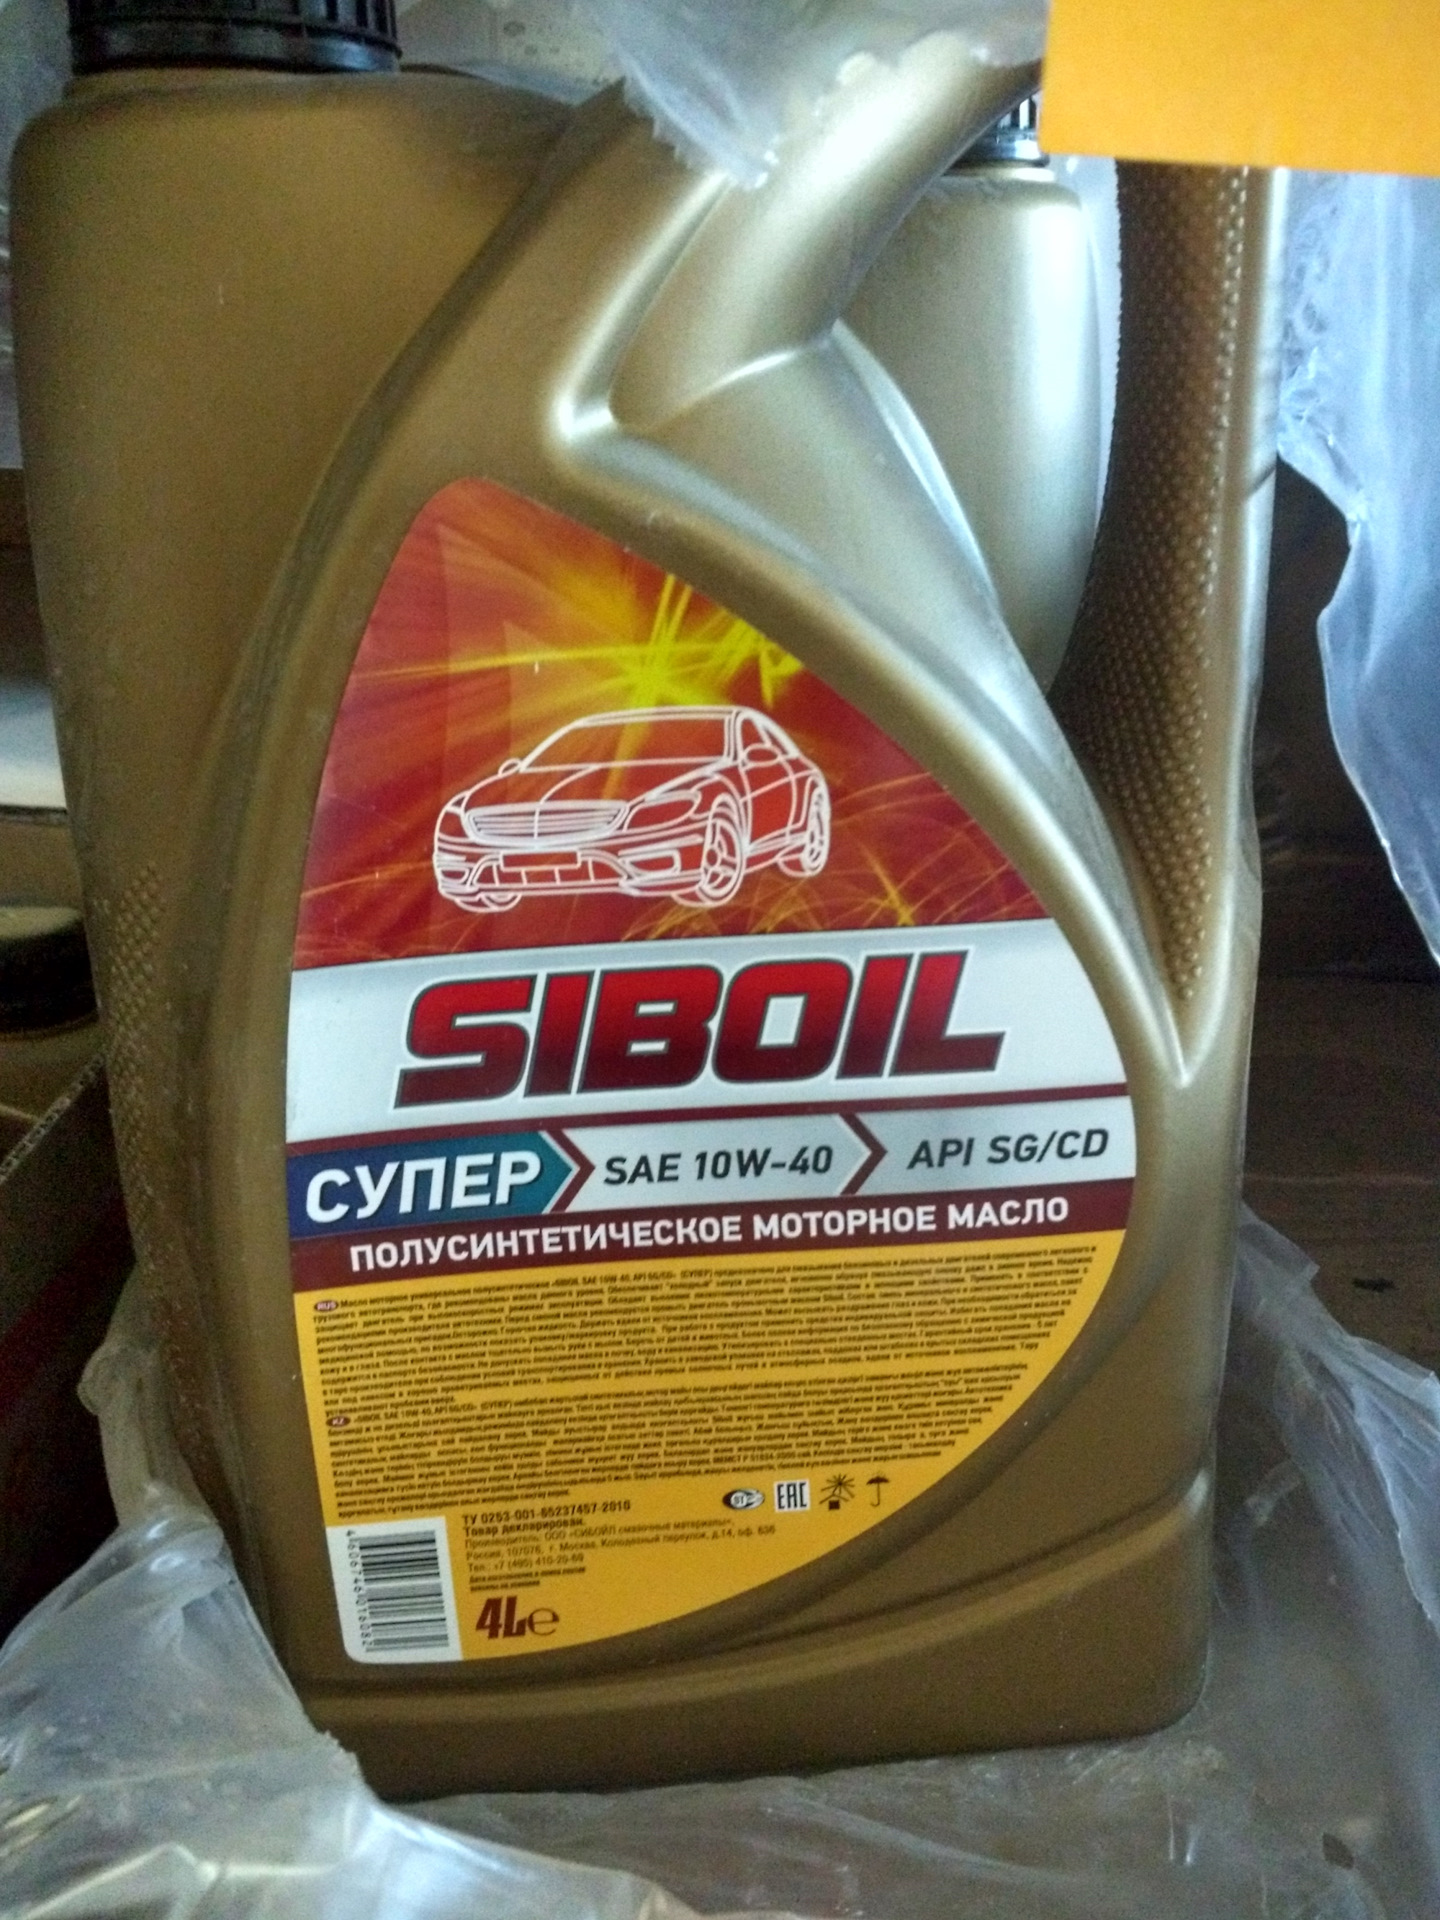 Озон автомобильные масла. Моторное масло Siboil SAE 10-w40. Моторное масло Сибойл 10w 40. Моторное масло "Siboil супер" SAE 10w40 п/синтетическое 4л.. Масло моторное Siboil 10w-40 полусинтетическое.